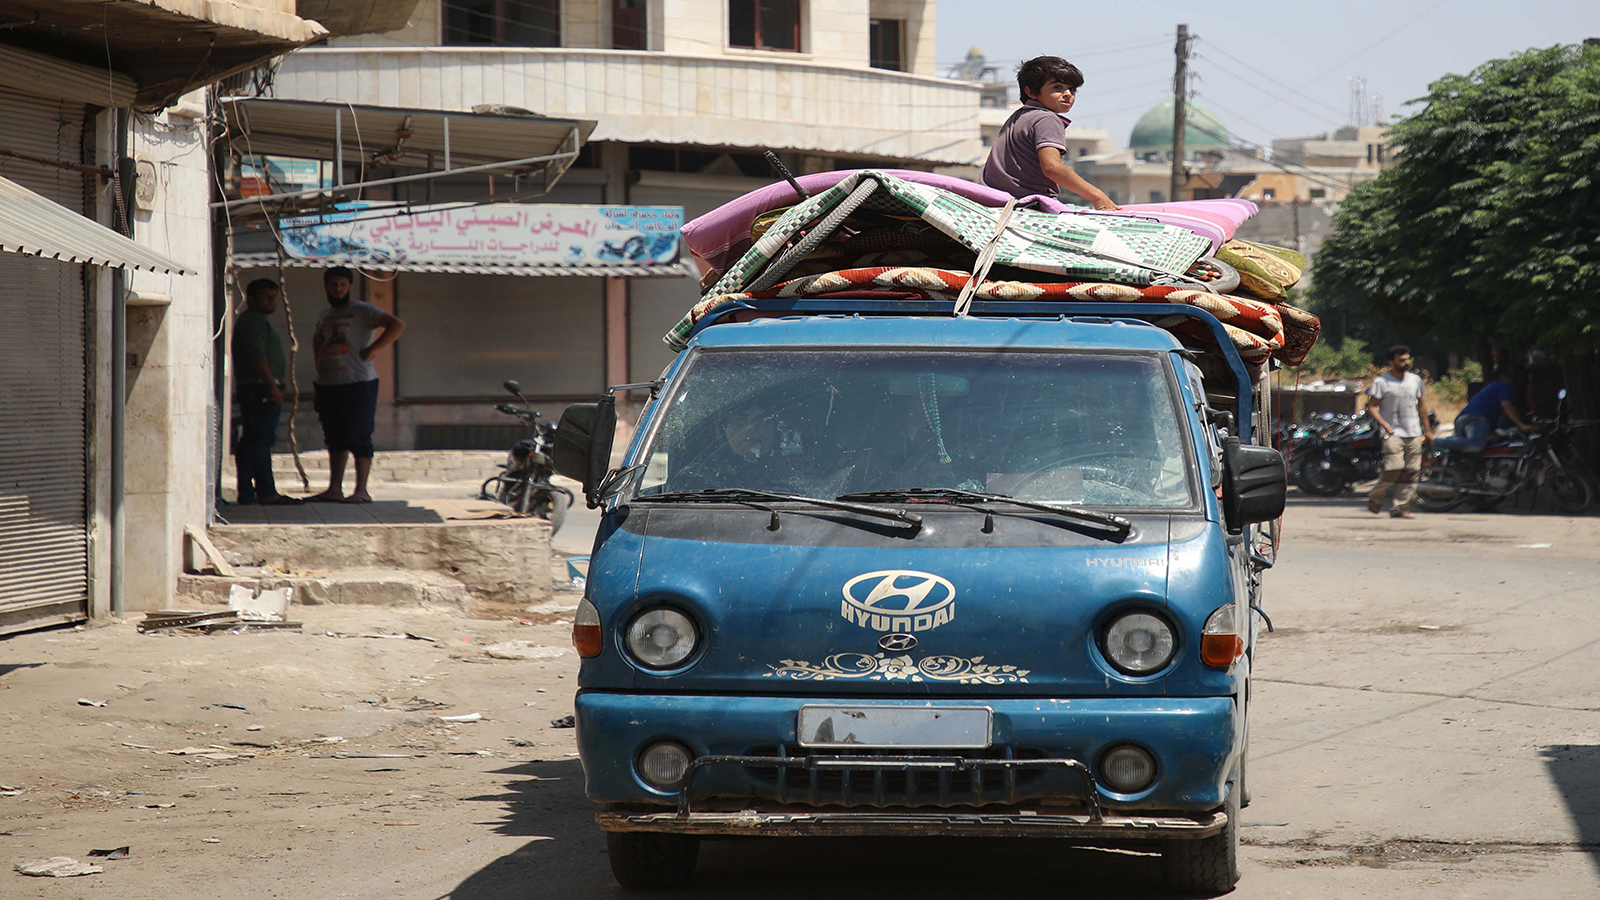 كم لوحة مرورية تحتاجها سيارتك في الشمال السوري؟